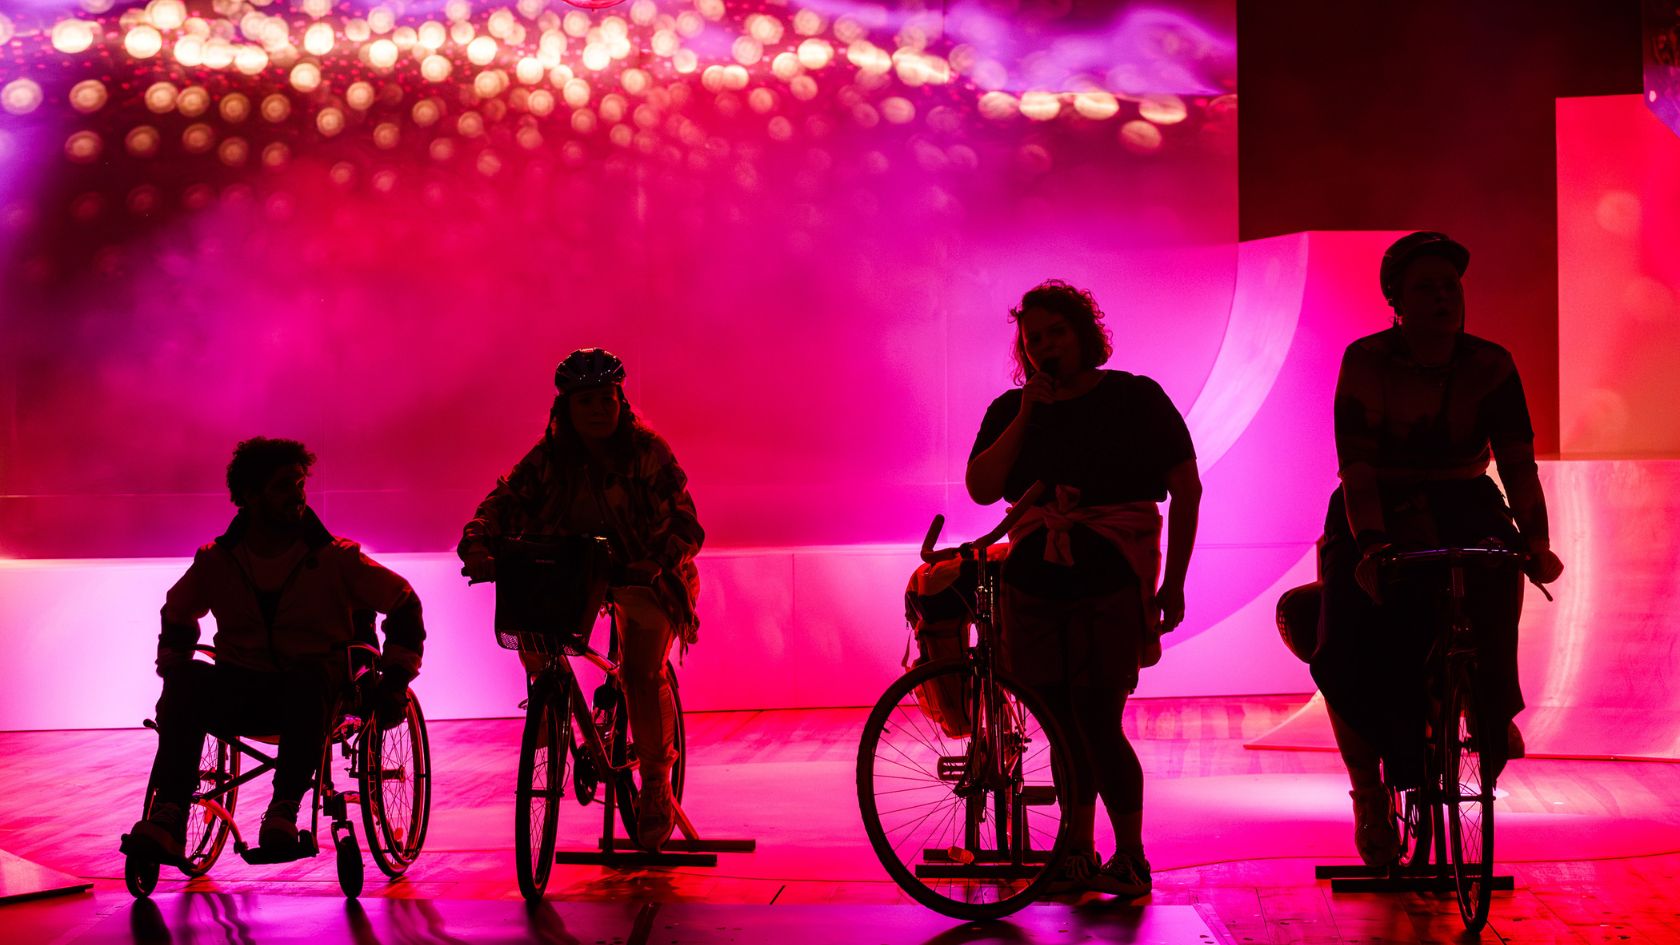 cztery czarne cienie osób jadących na rowerach i na wózku inwalidzkim na różowym tle